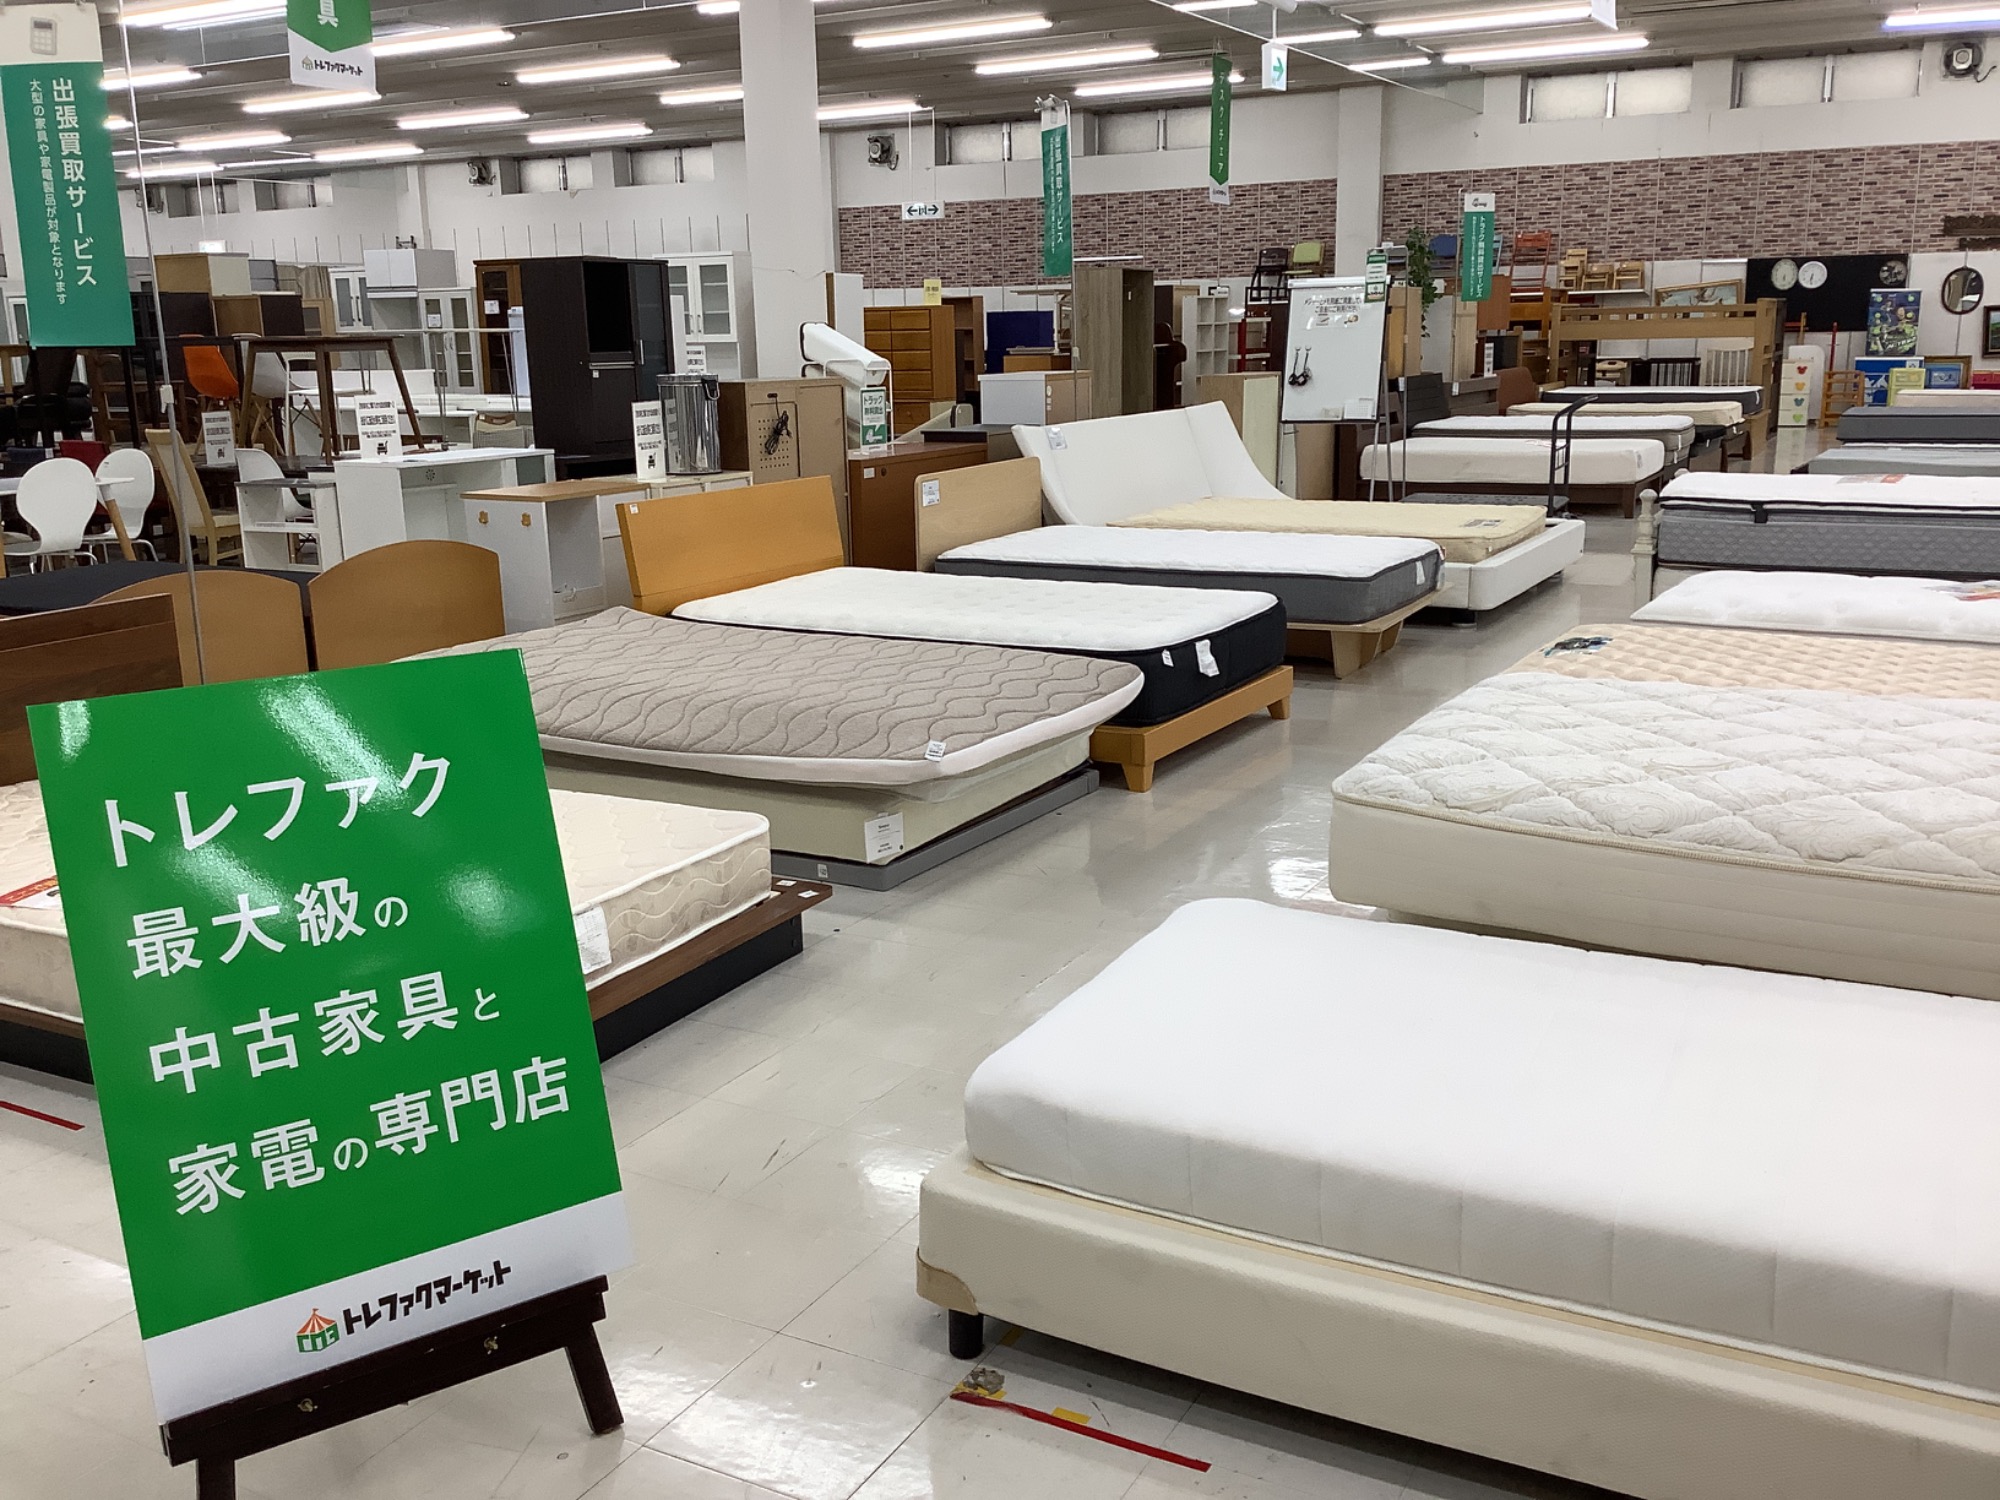 ベッド大量展示中！東京ベッドやニトリ、karimokuなど各種ブランドも取り揃えております！